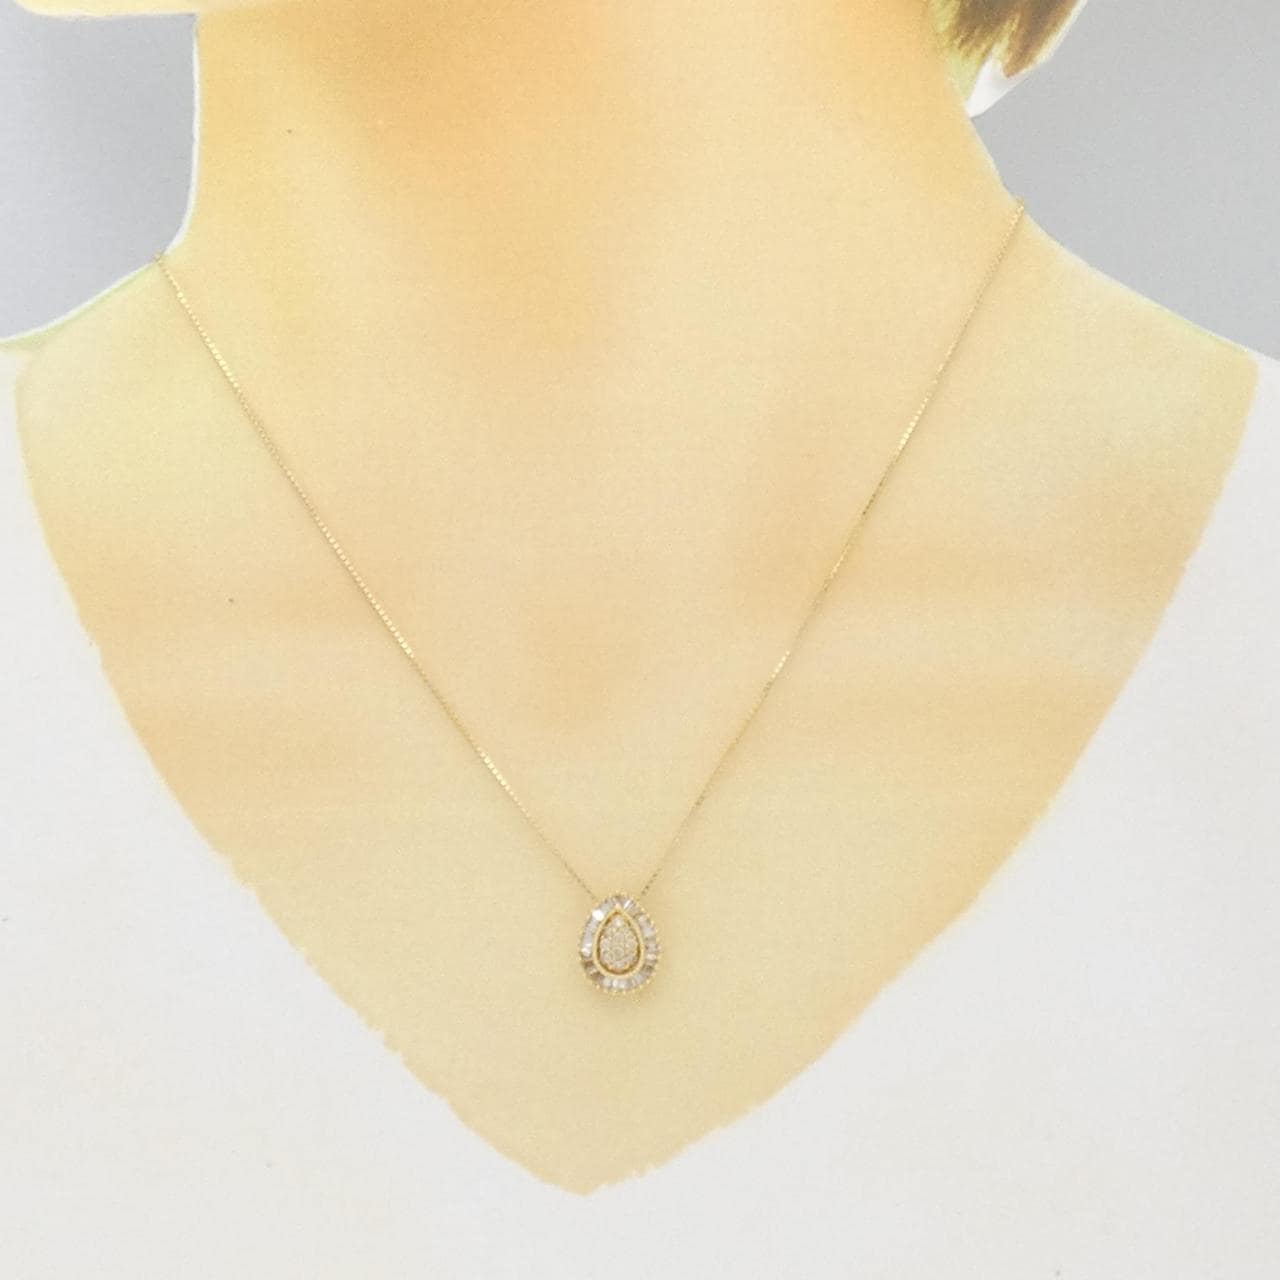 K18YG 2WAY Diamond necklace 0.32CT